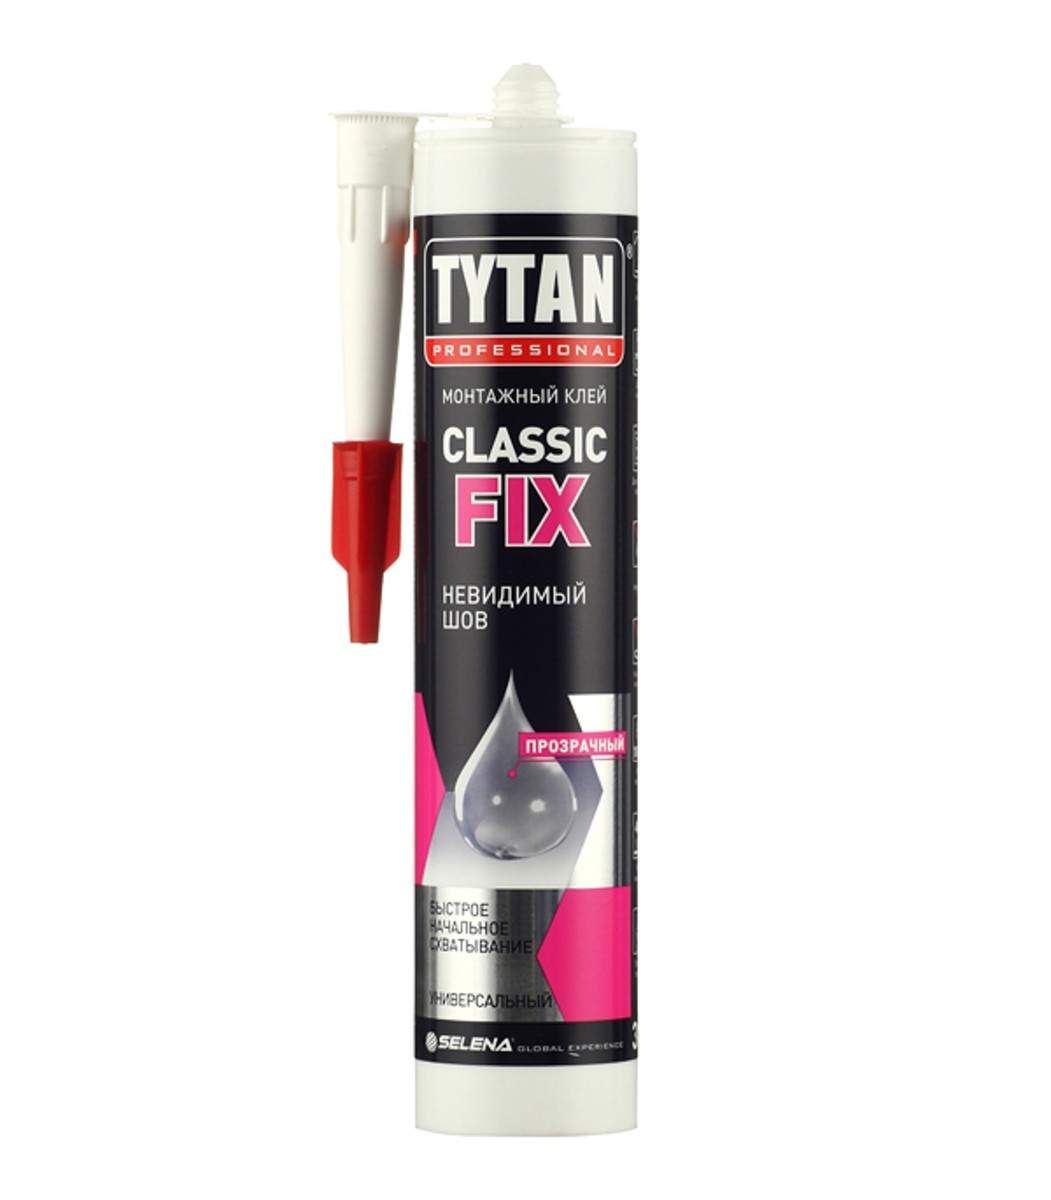 Tytan classic fix прозрачный. Клей монтажный каучуковый Tytan Classic Fix прозрачный 310 мл. Жидкие гвозди Tytan Classic Fix 310 мл. Tytan professional клей монтажный Classic Fix, прозрачный, 310 мл. Клей монтажный Титан Classic Fix.